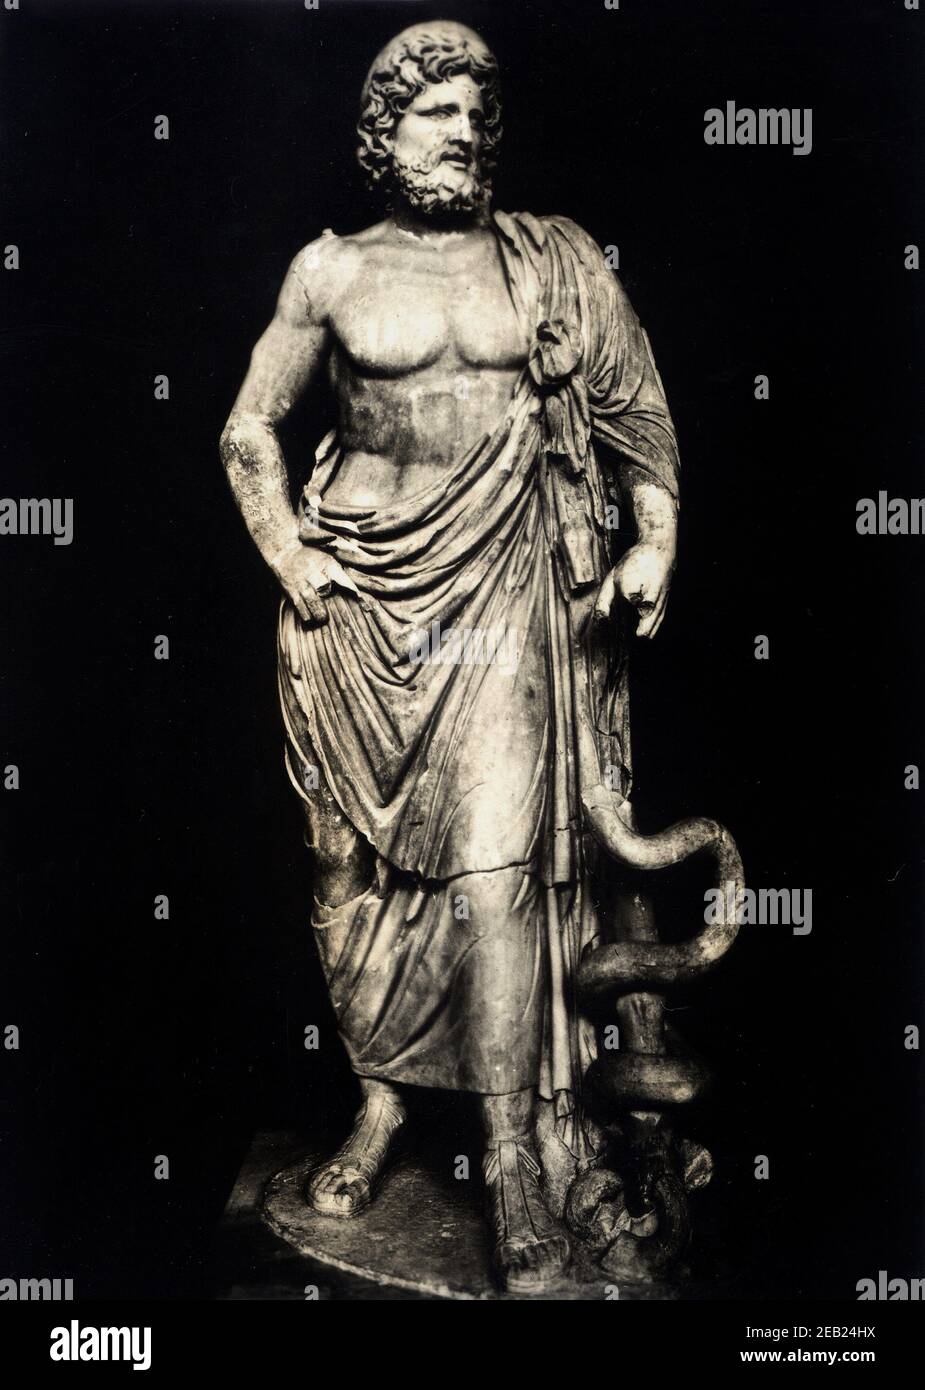 ESCULAPIO , ancient romans  divinity of Medicine , identified in the grecian god Asclepio - DIO - DEI - Divinità - MITOLOGIA - MITHOLOGY - statua - statue - marble - serpente - serpent - MEDICINA - MEDICO - MEDICAL - ESCULAPIUM - ASCLEPIUM  ----  Archivio GBB Stock Photo